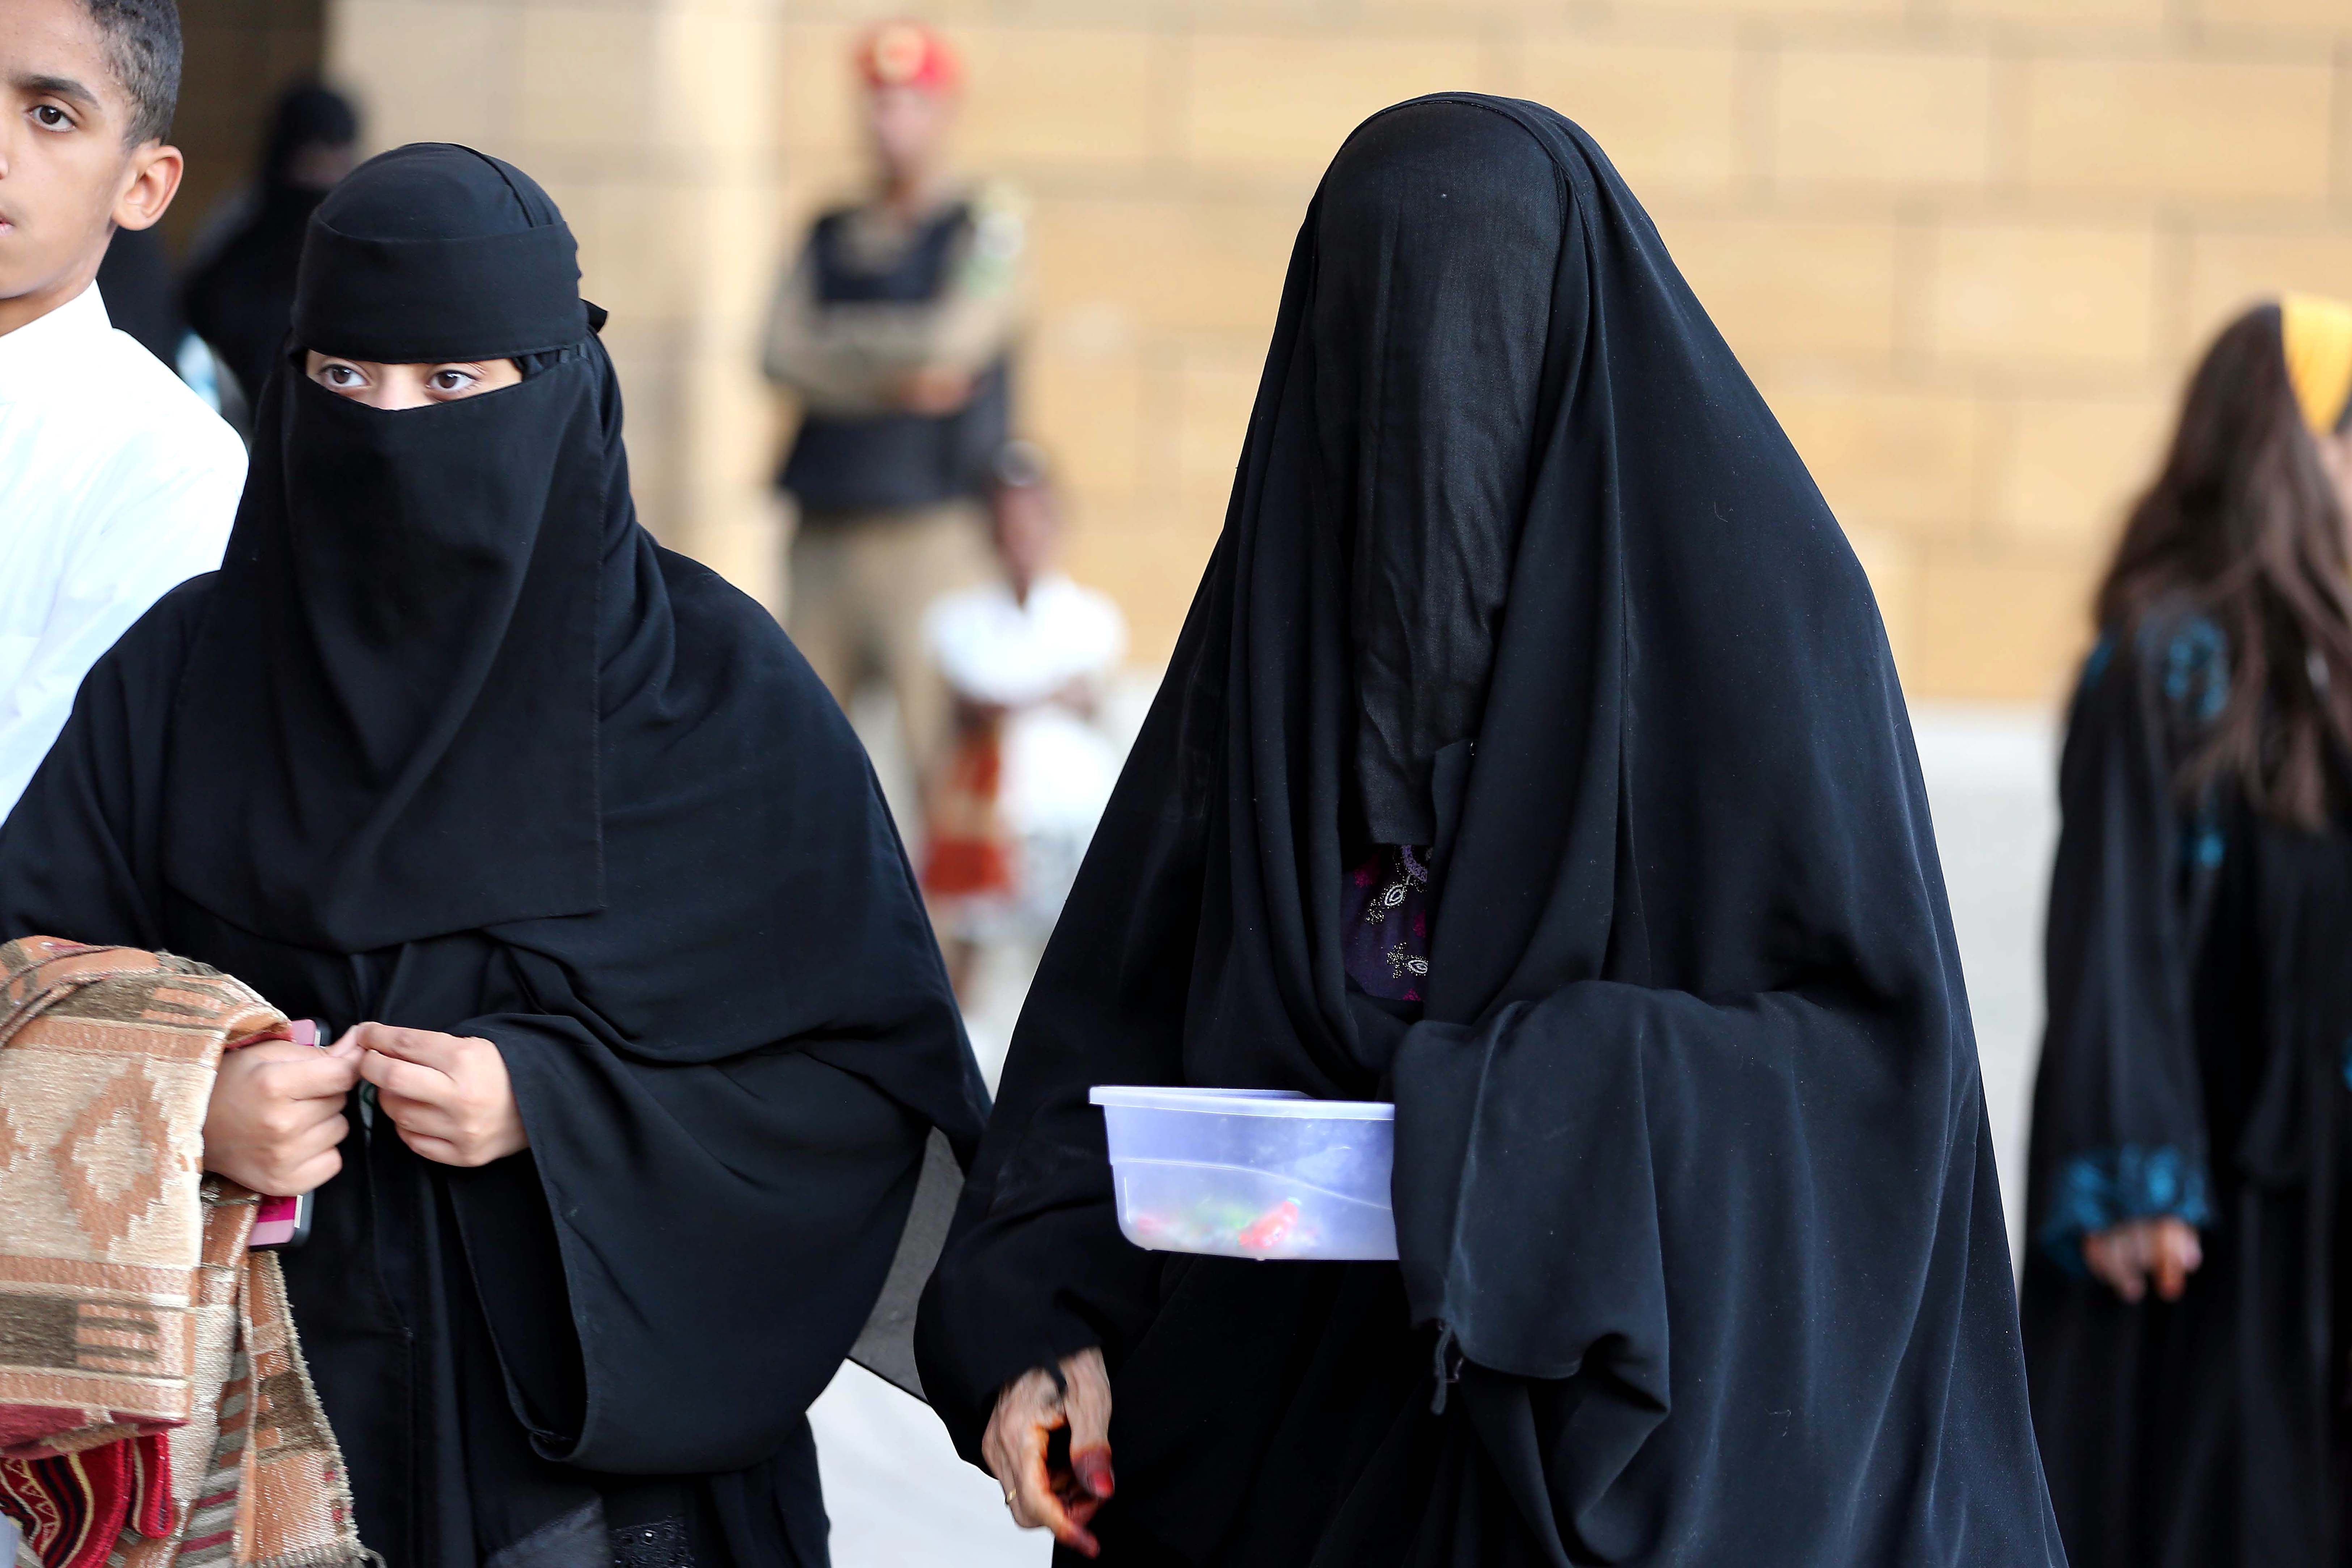 Life in saudi arabia for women